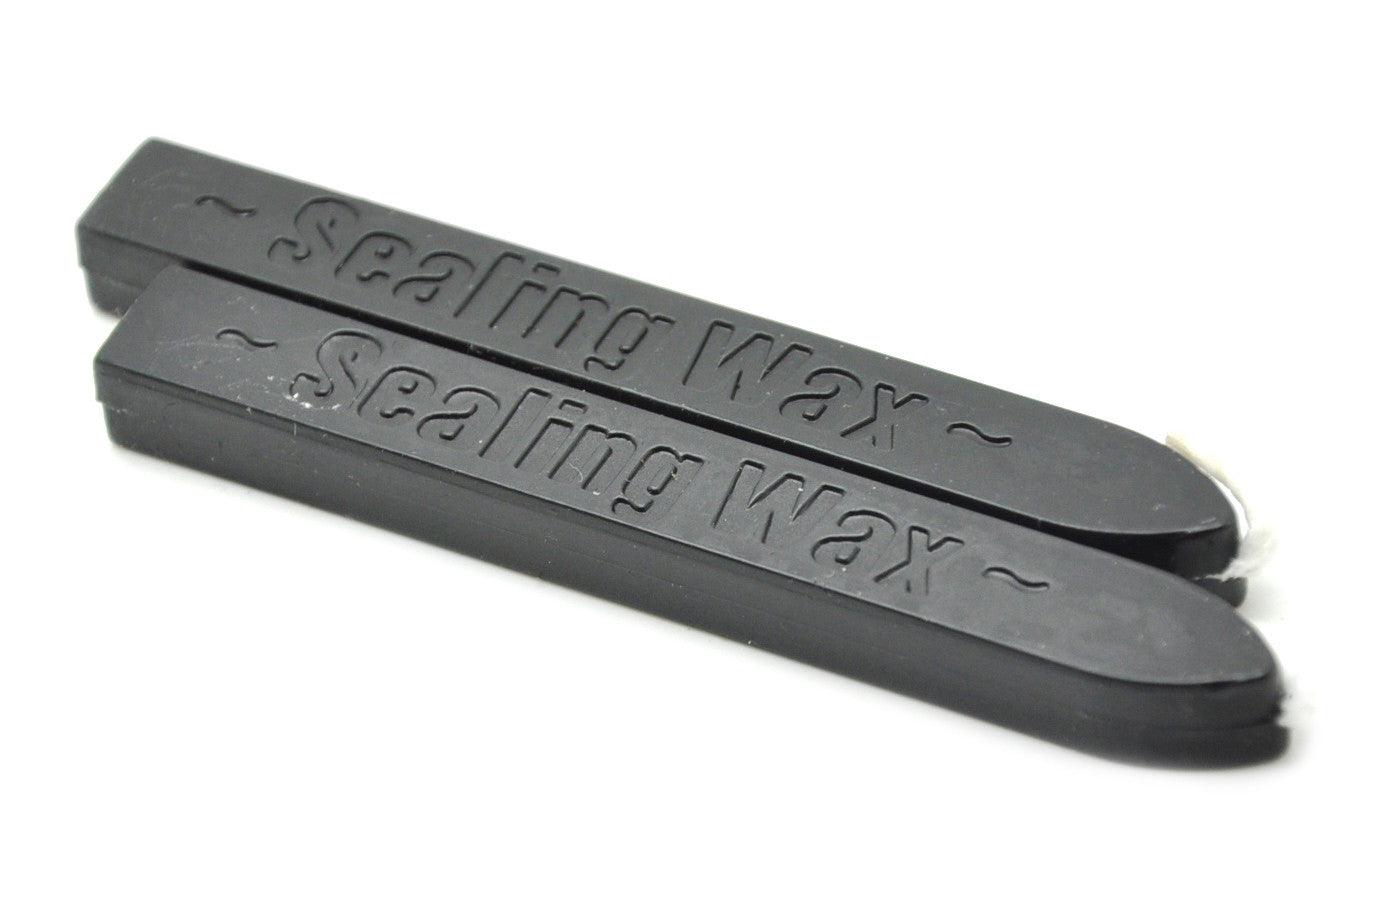 Black Wick Sealing Wax Stick - Backtozero B20 - Black, sale, Sealing Wax, Wick Stick, Wick Wax, wwax, wwf